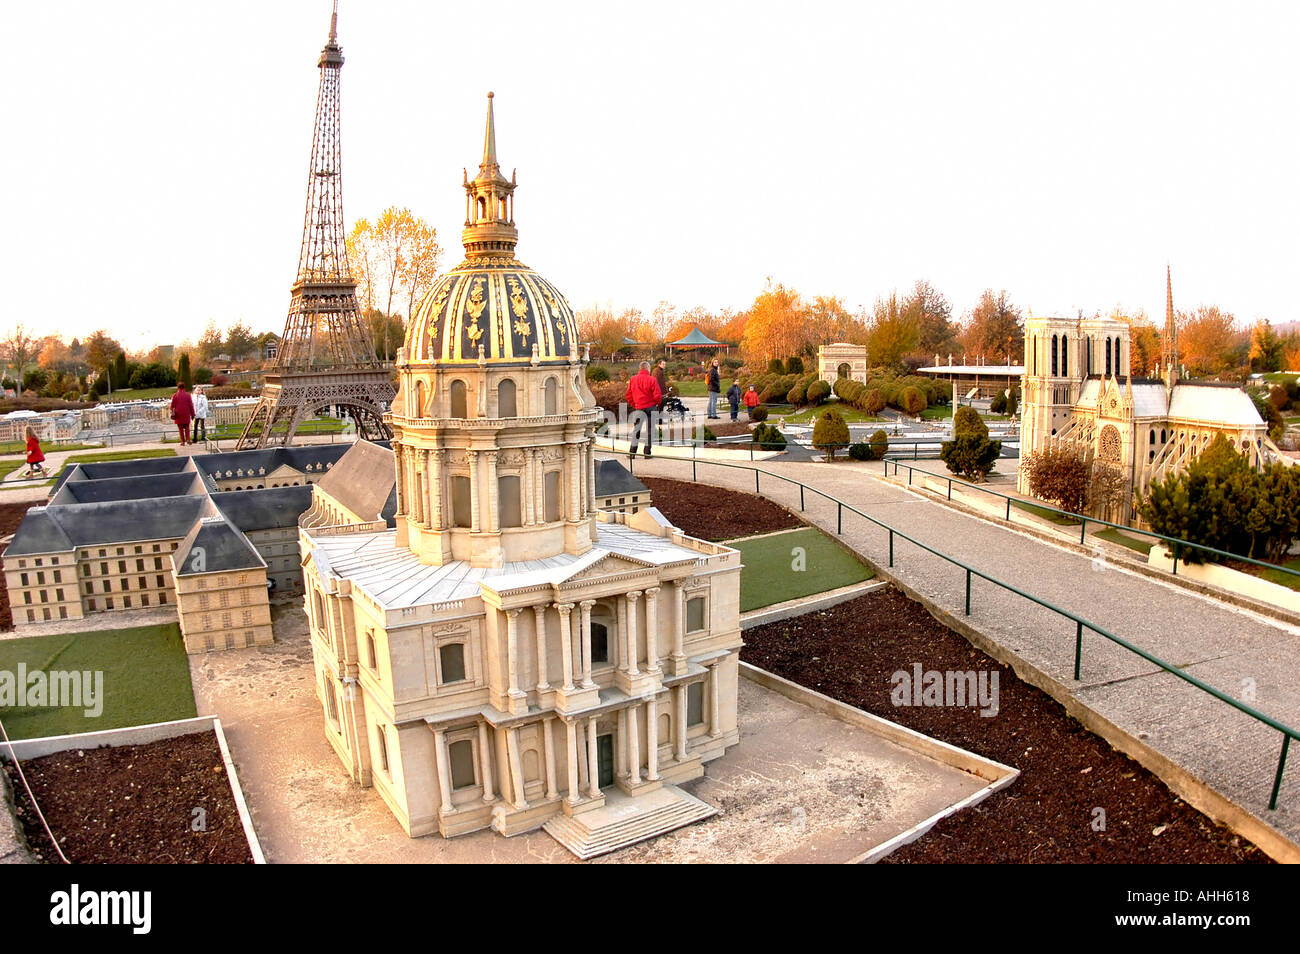 Elancourt, France, Parc à thème 'France miniature' maquettes architecturales, monuments français, Paris, lieux insolites Banque D'Images